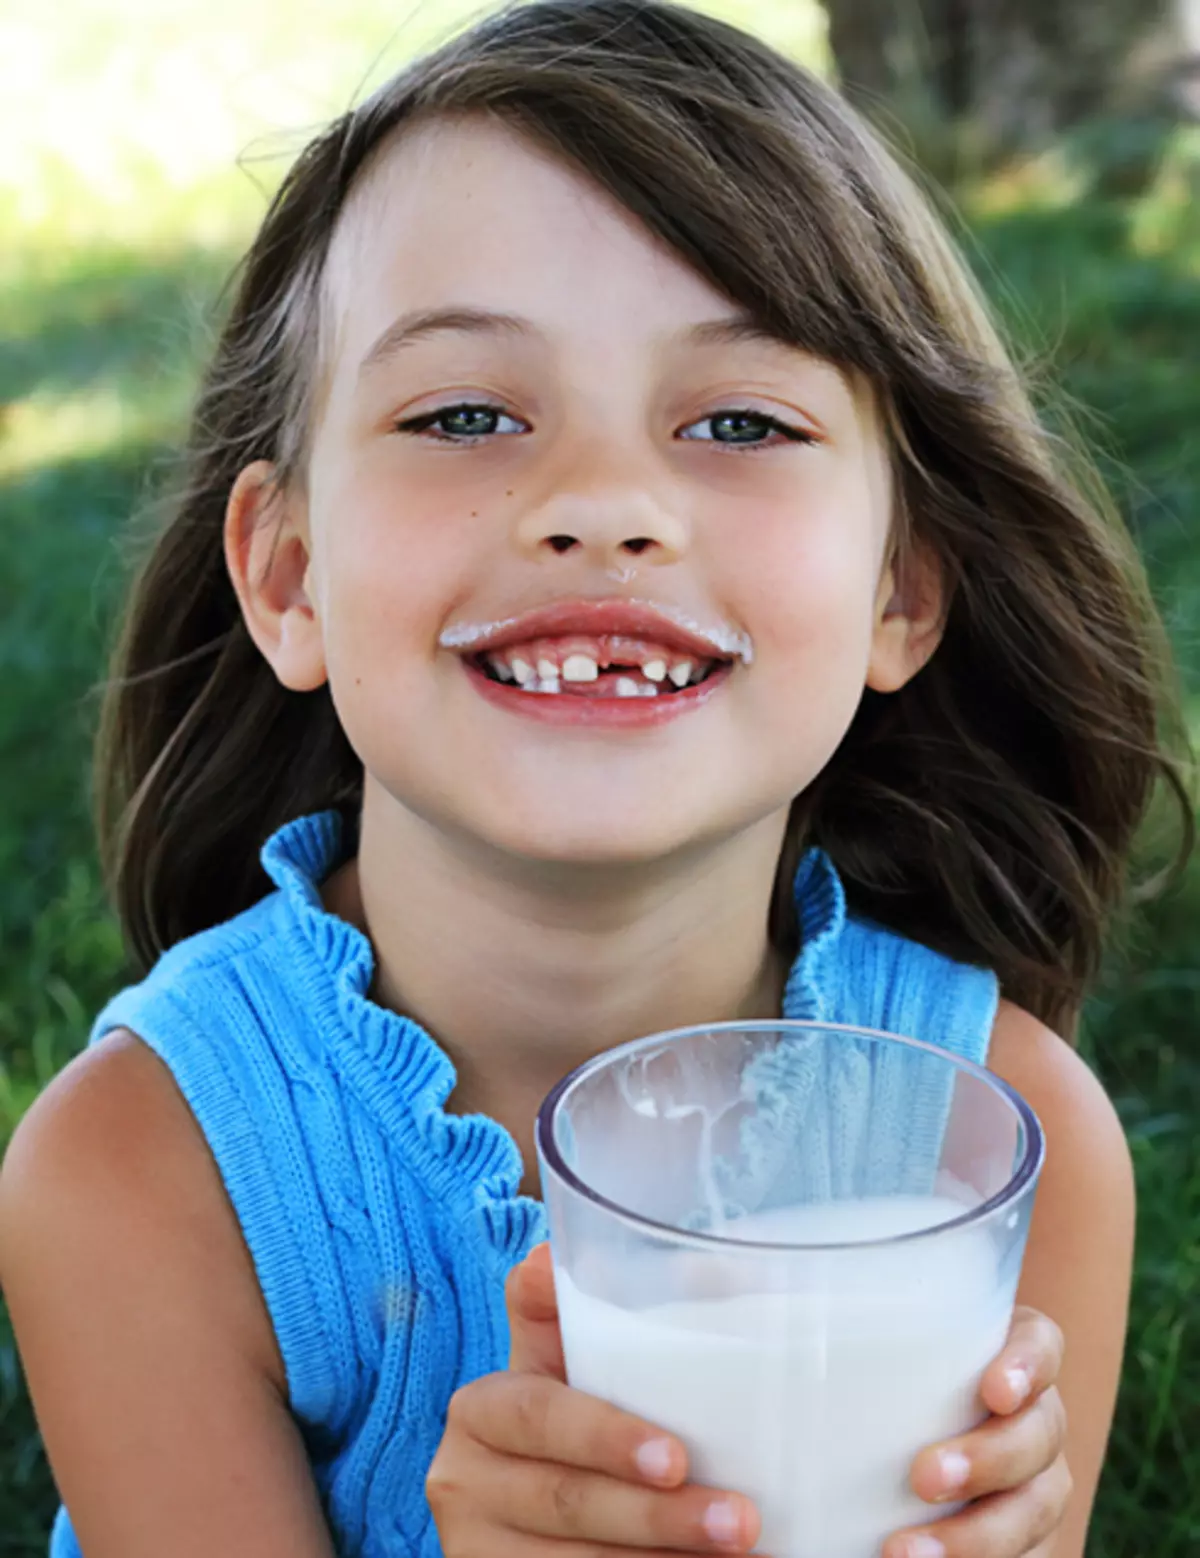 Hippokrat byl přesvědčen, že zuby v dětí jsou tvořeny z mateřského mléka